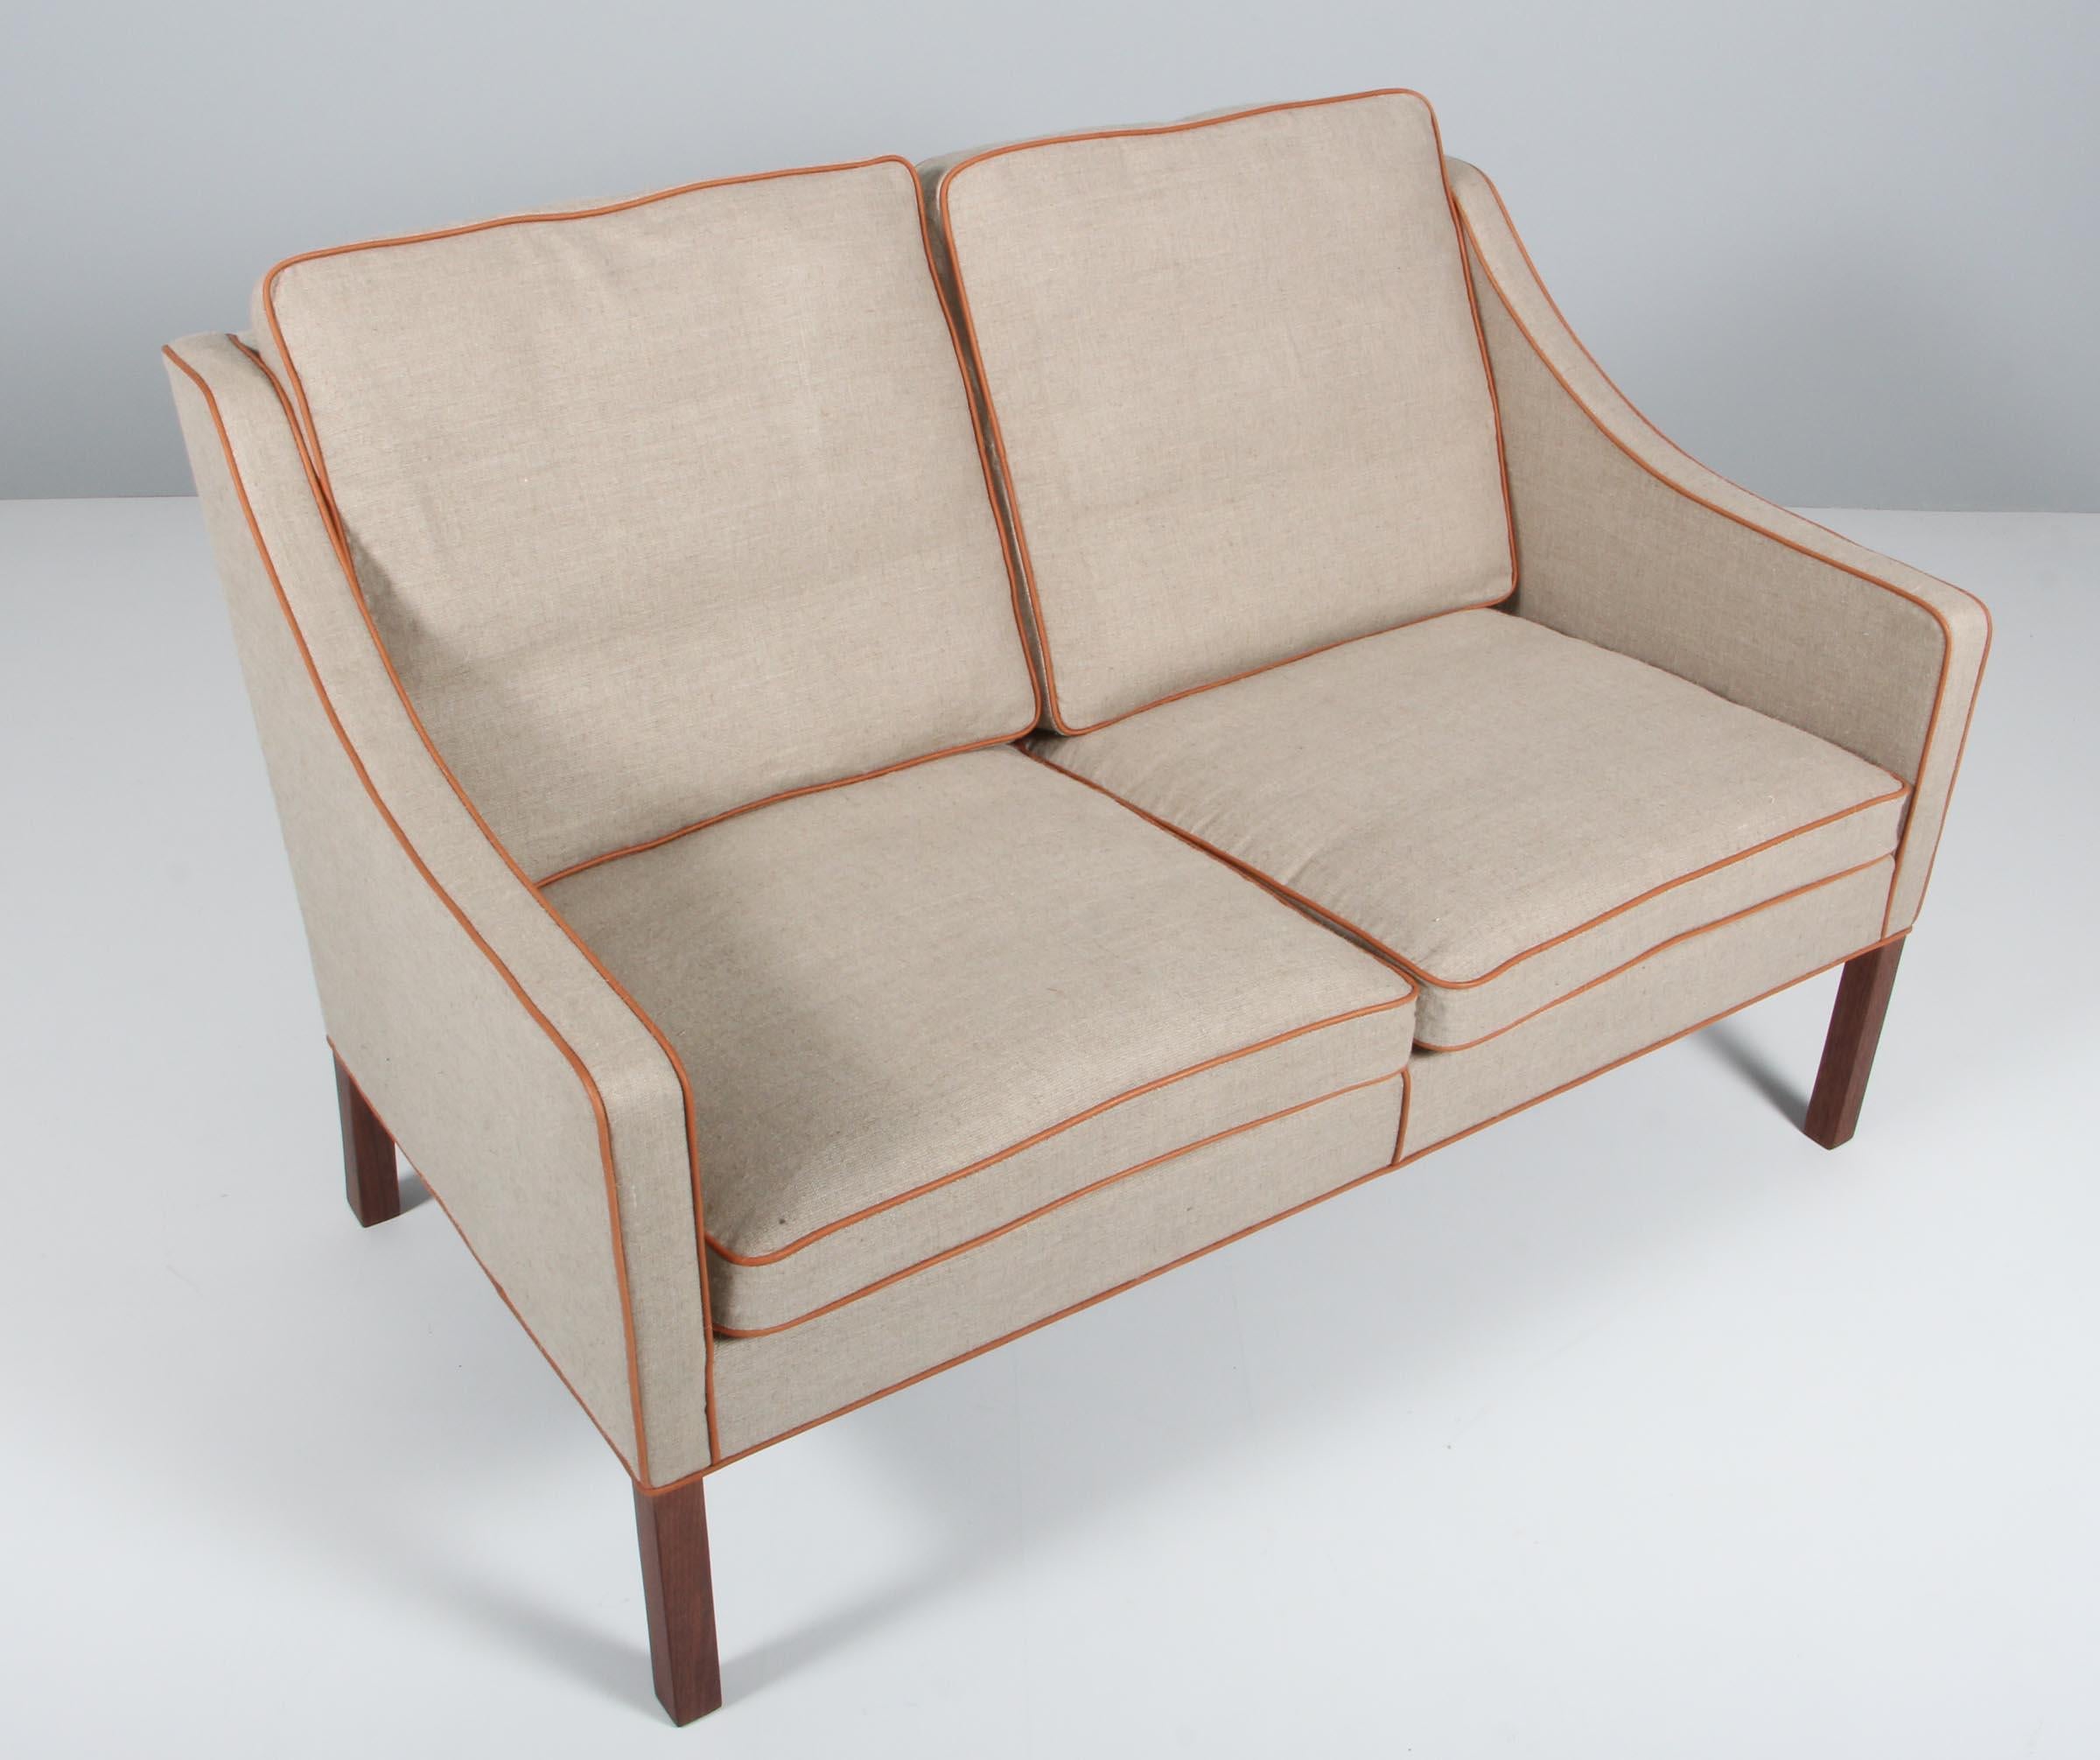 Børge Mogensen Zweisitzer-Sofa, neu gepolstert mit Canvas und hellbraunem Anilinleder.

Beine aus Mahagoni.

Modell 2209, hergestellt von Fredericia Möbel.